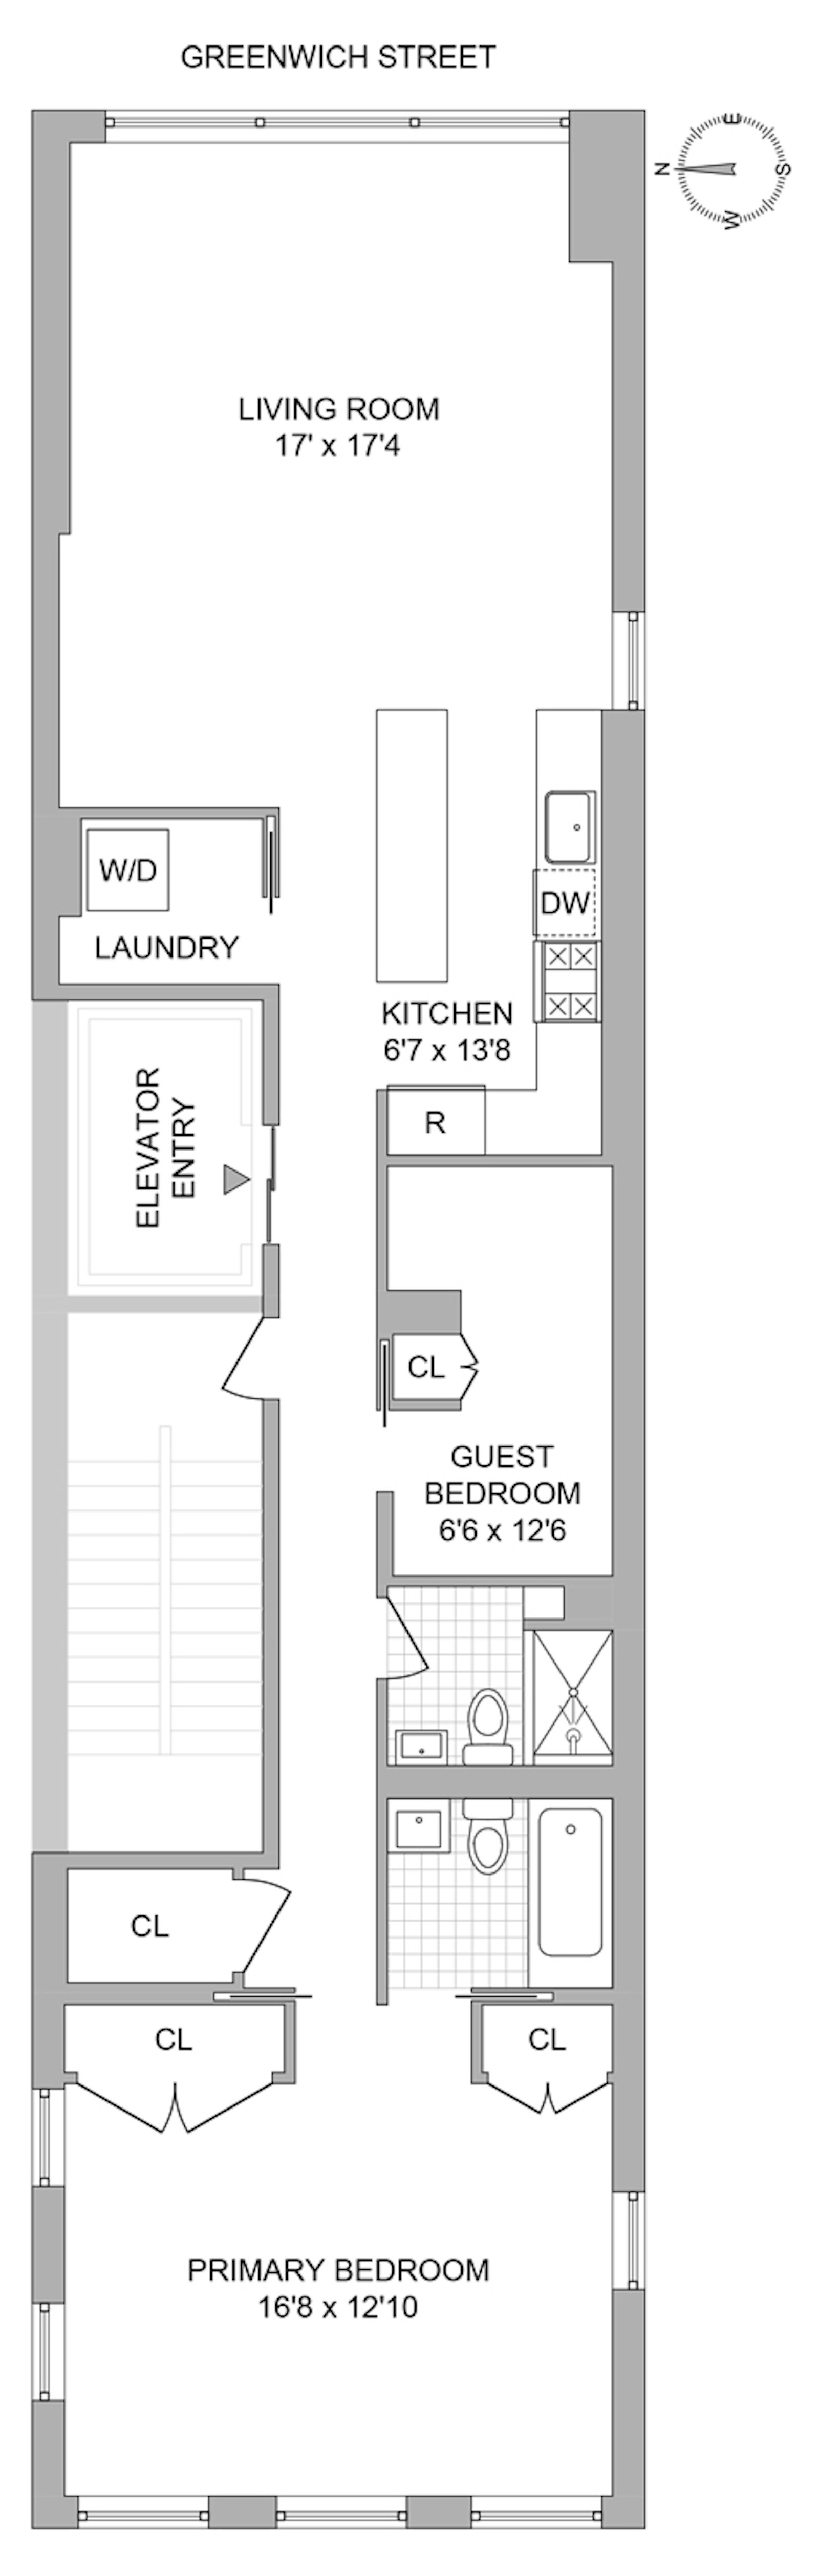 Floorplan for 448 Greenwich Street, 2